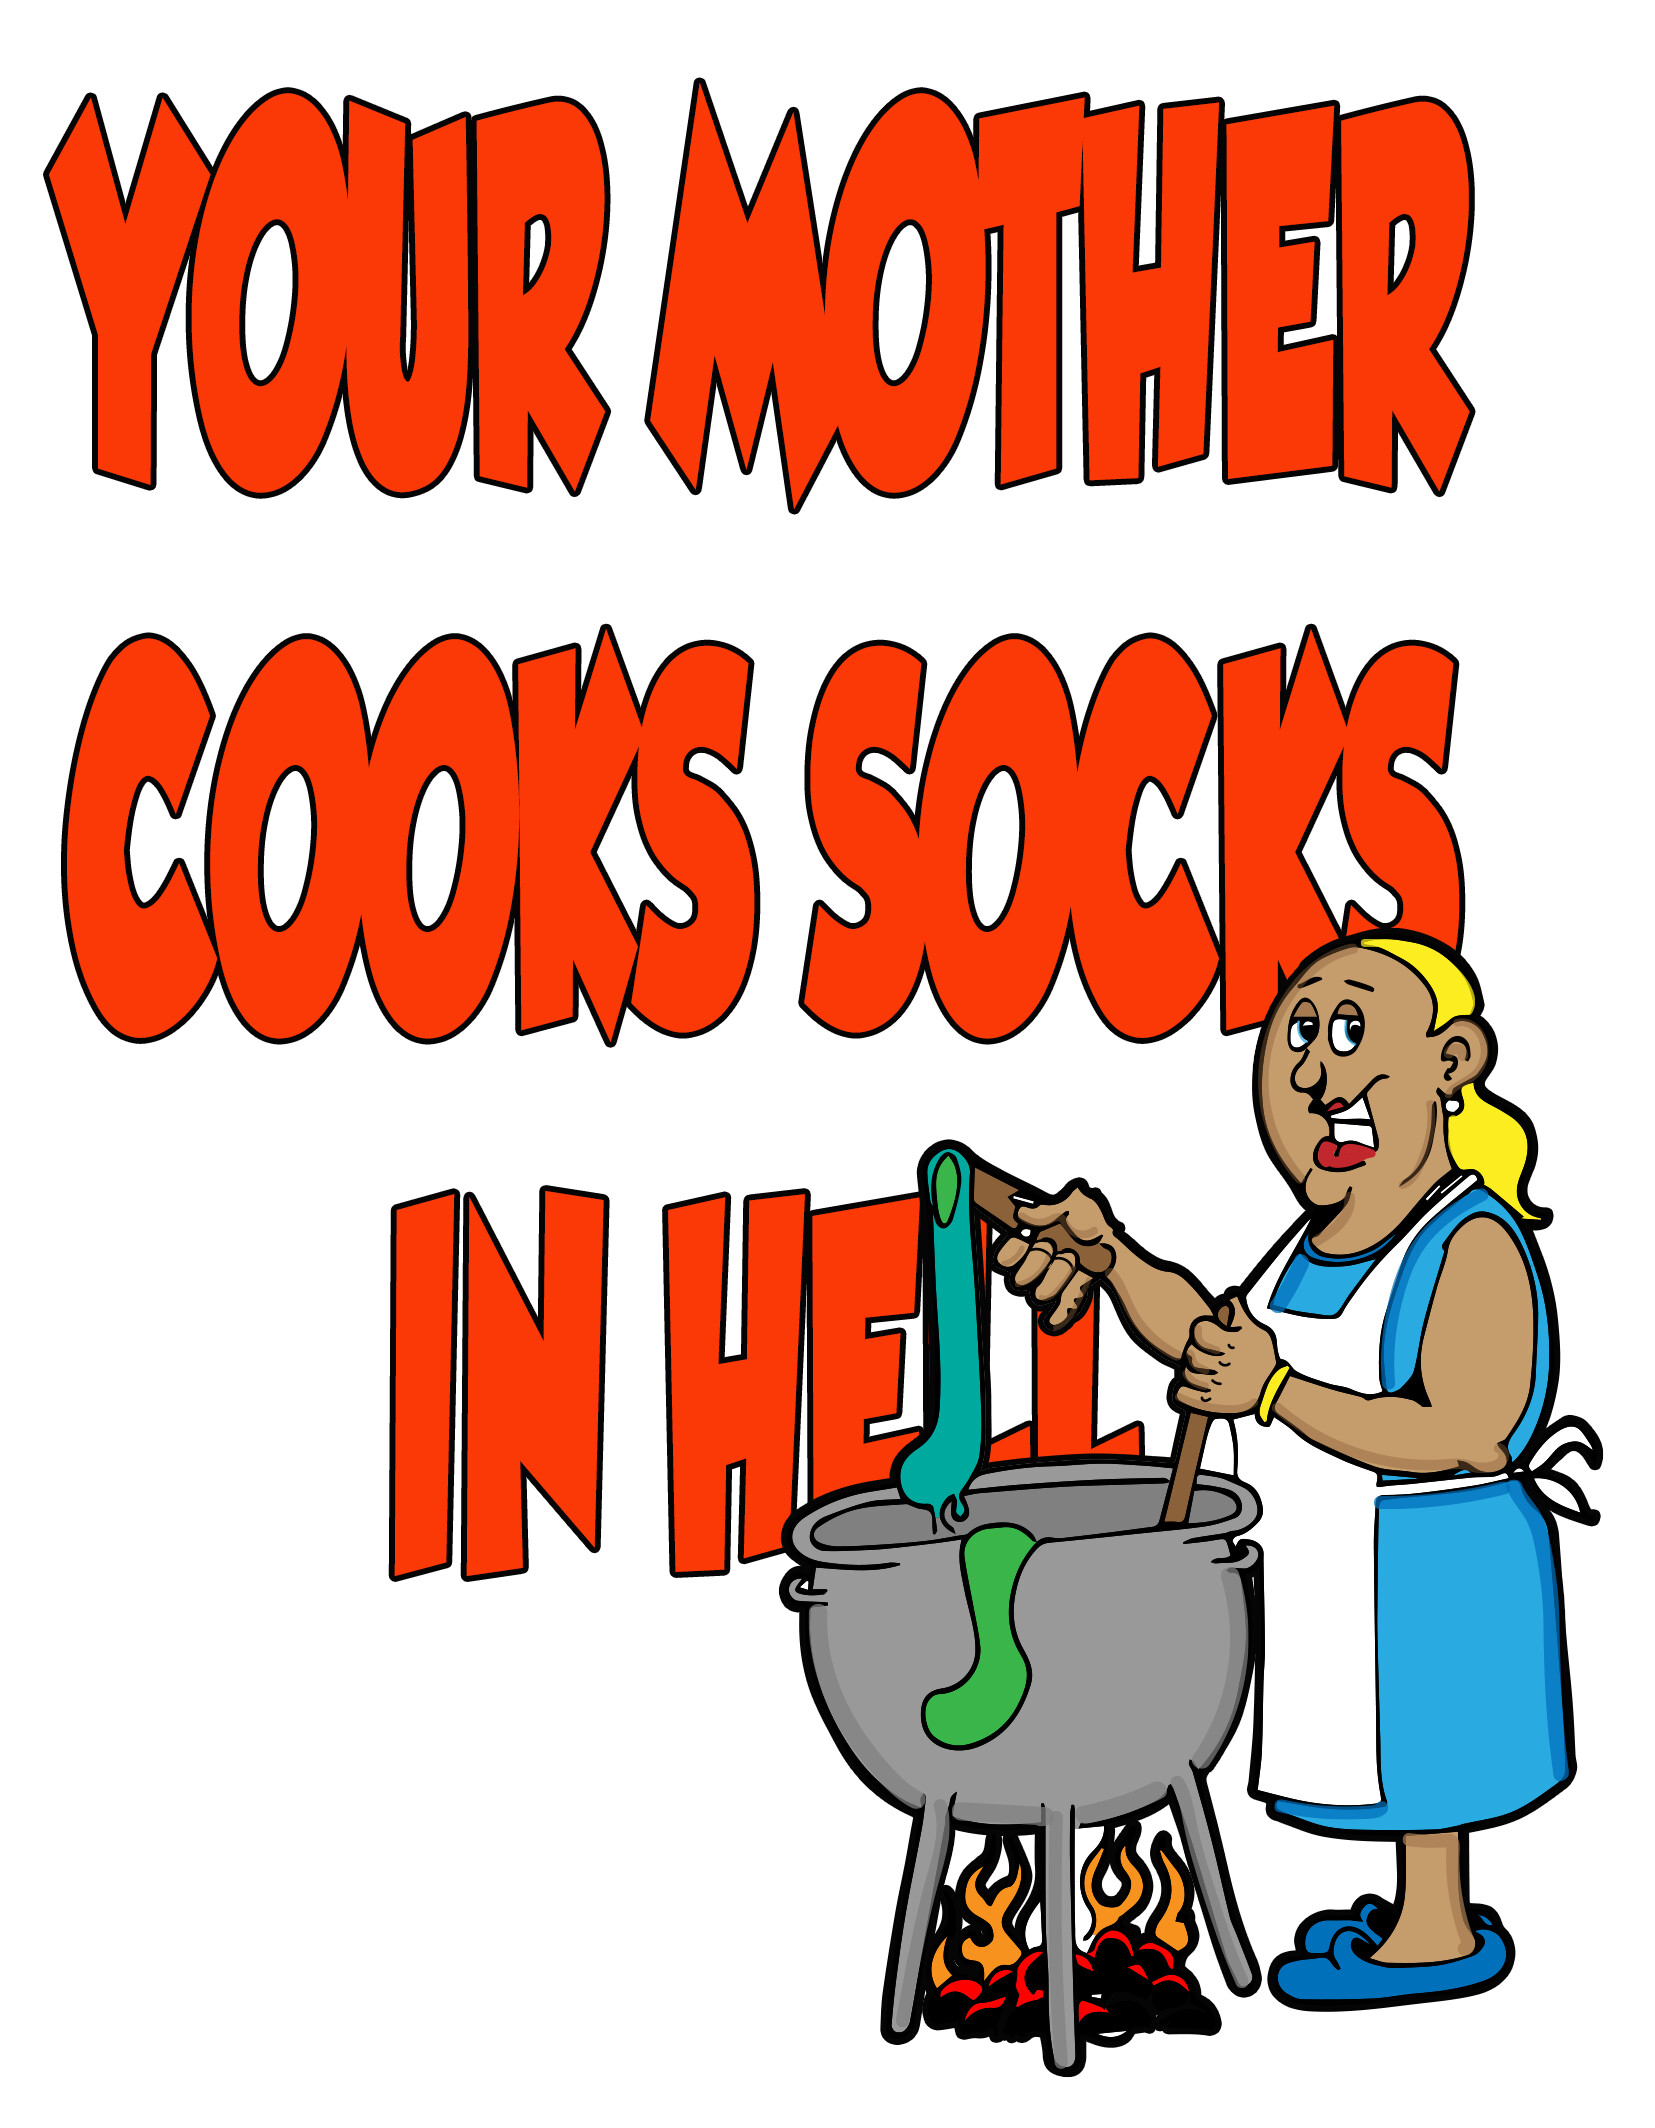 dayvid-art-mother-cooks-socks.jpg